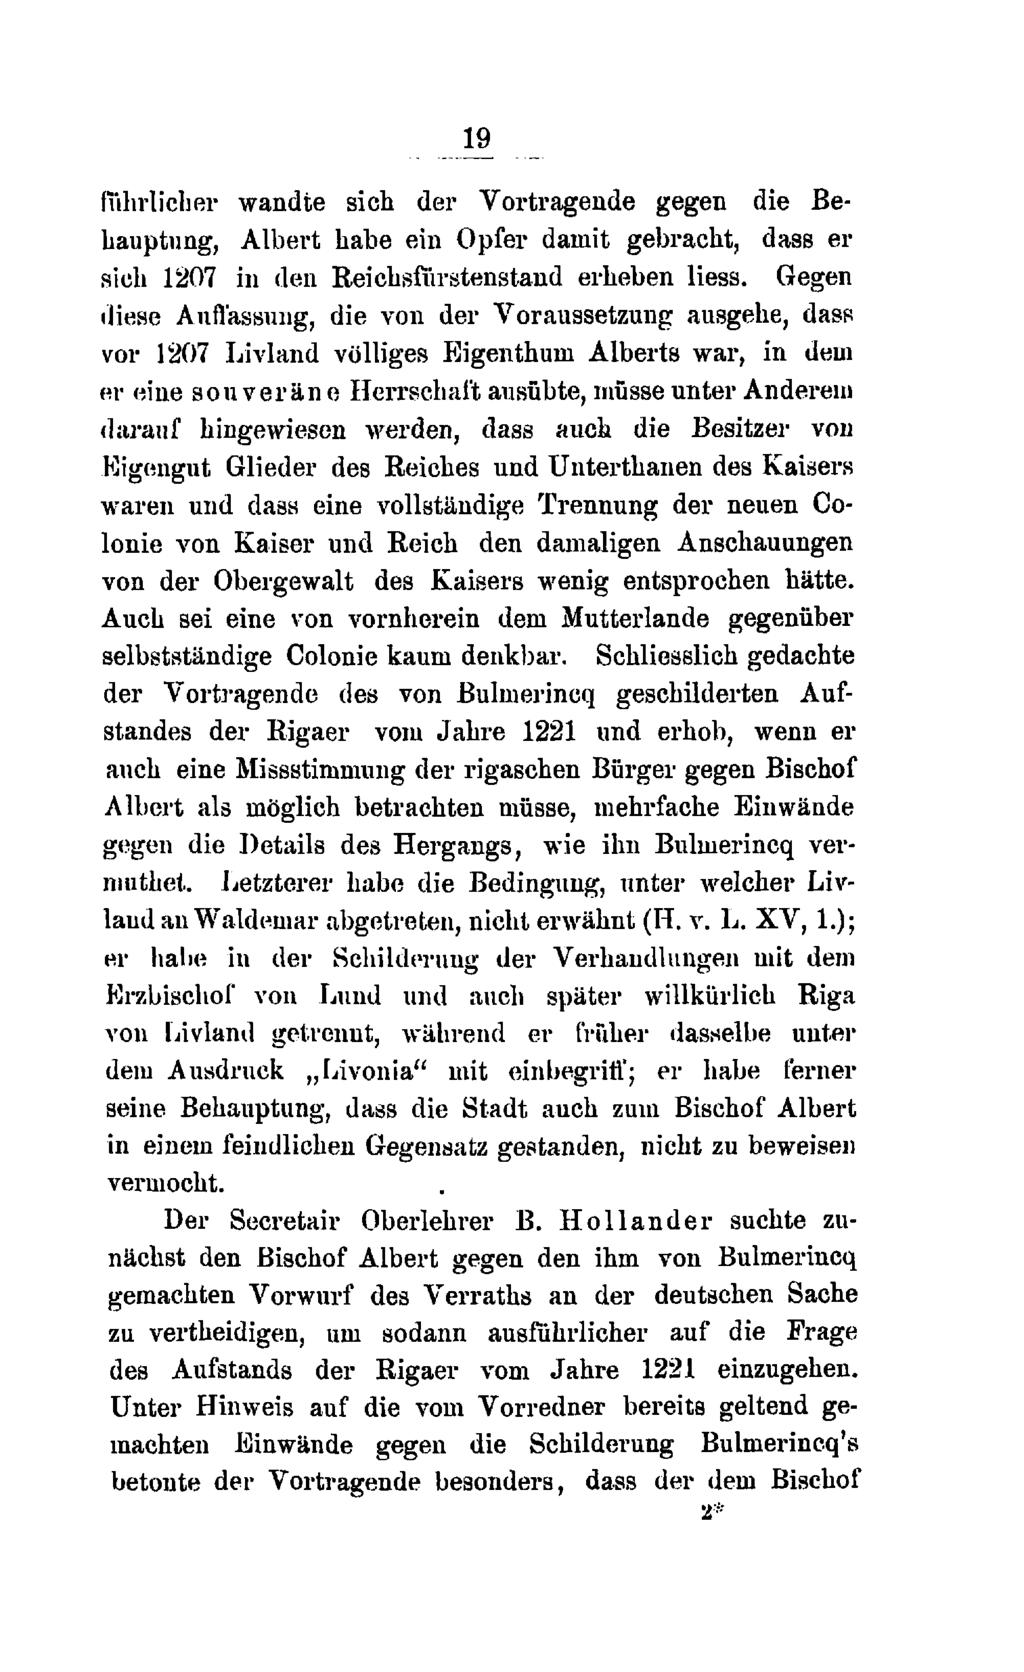 19 fuhrlicher wandte sich der Vortragende gegen die Behauptung, Albert habe ein Opfer damit gebracht, dass er sich 1207 in den Reichsfiirstenstand erheben liess.